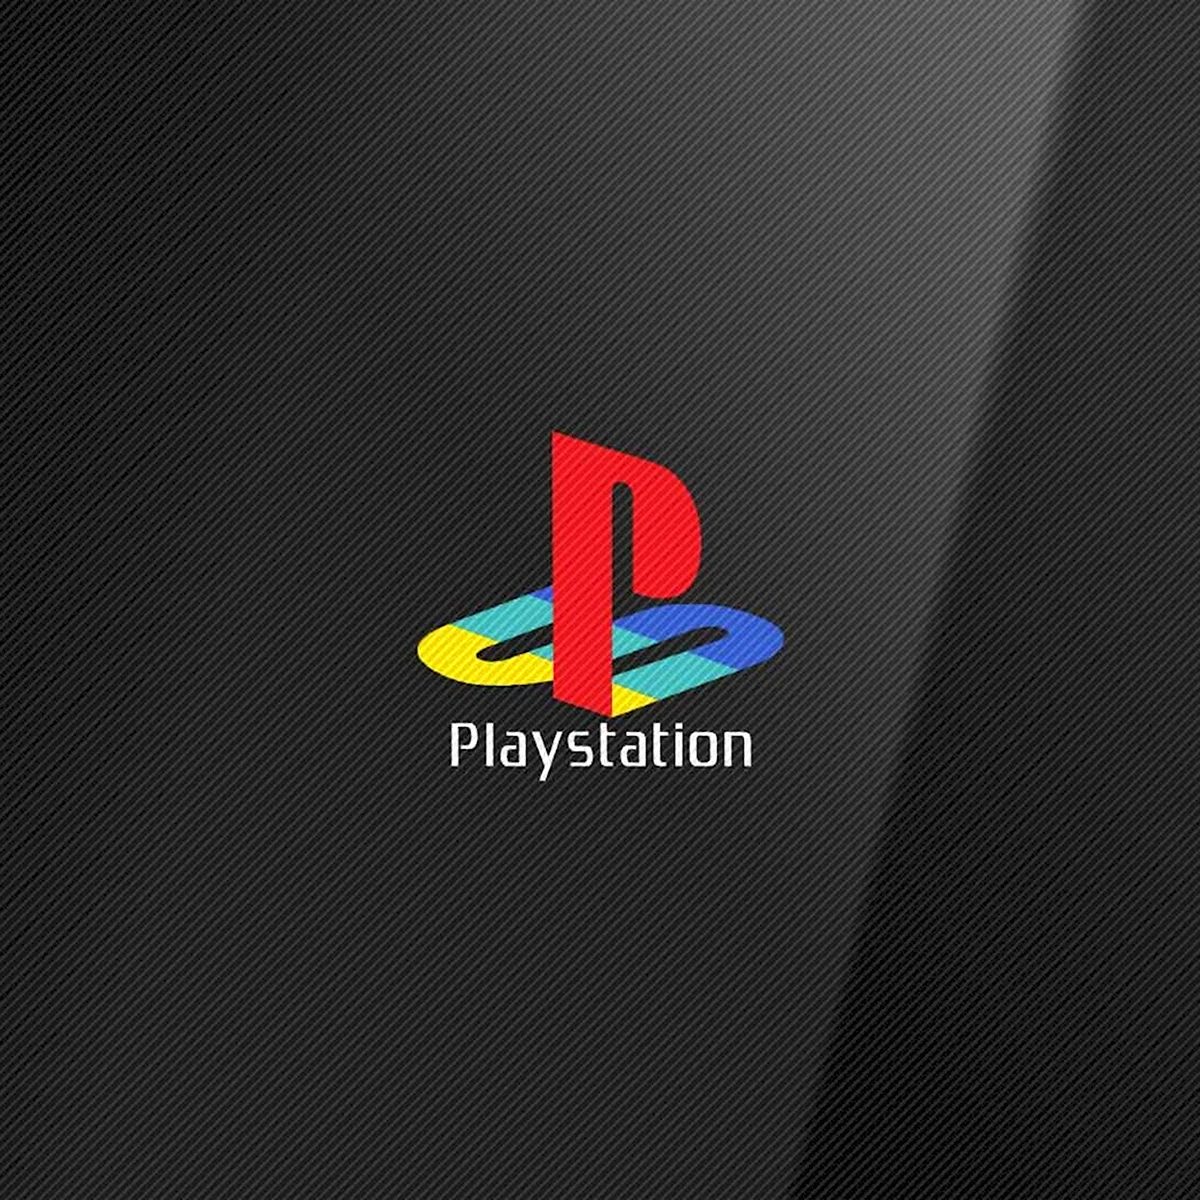 Sony ps1 logo